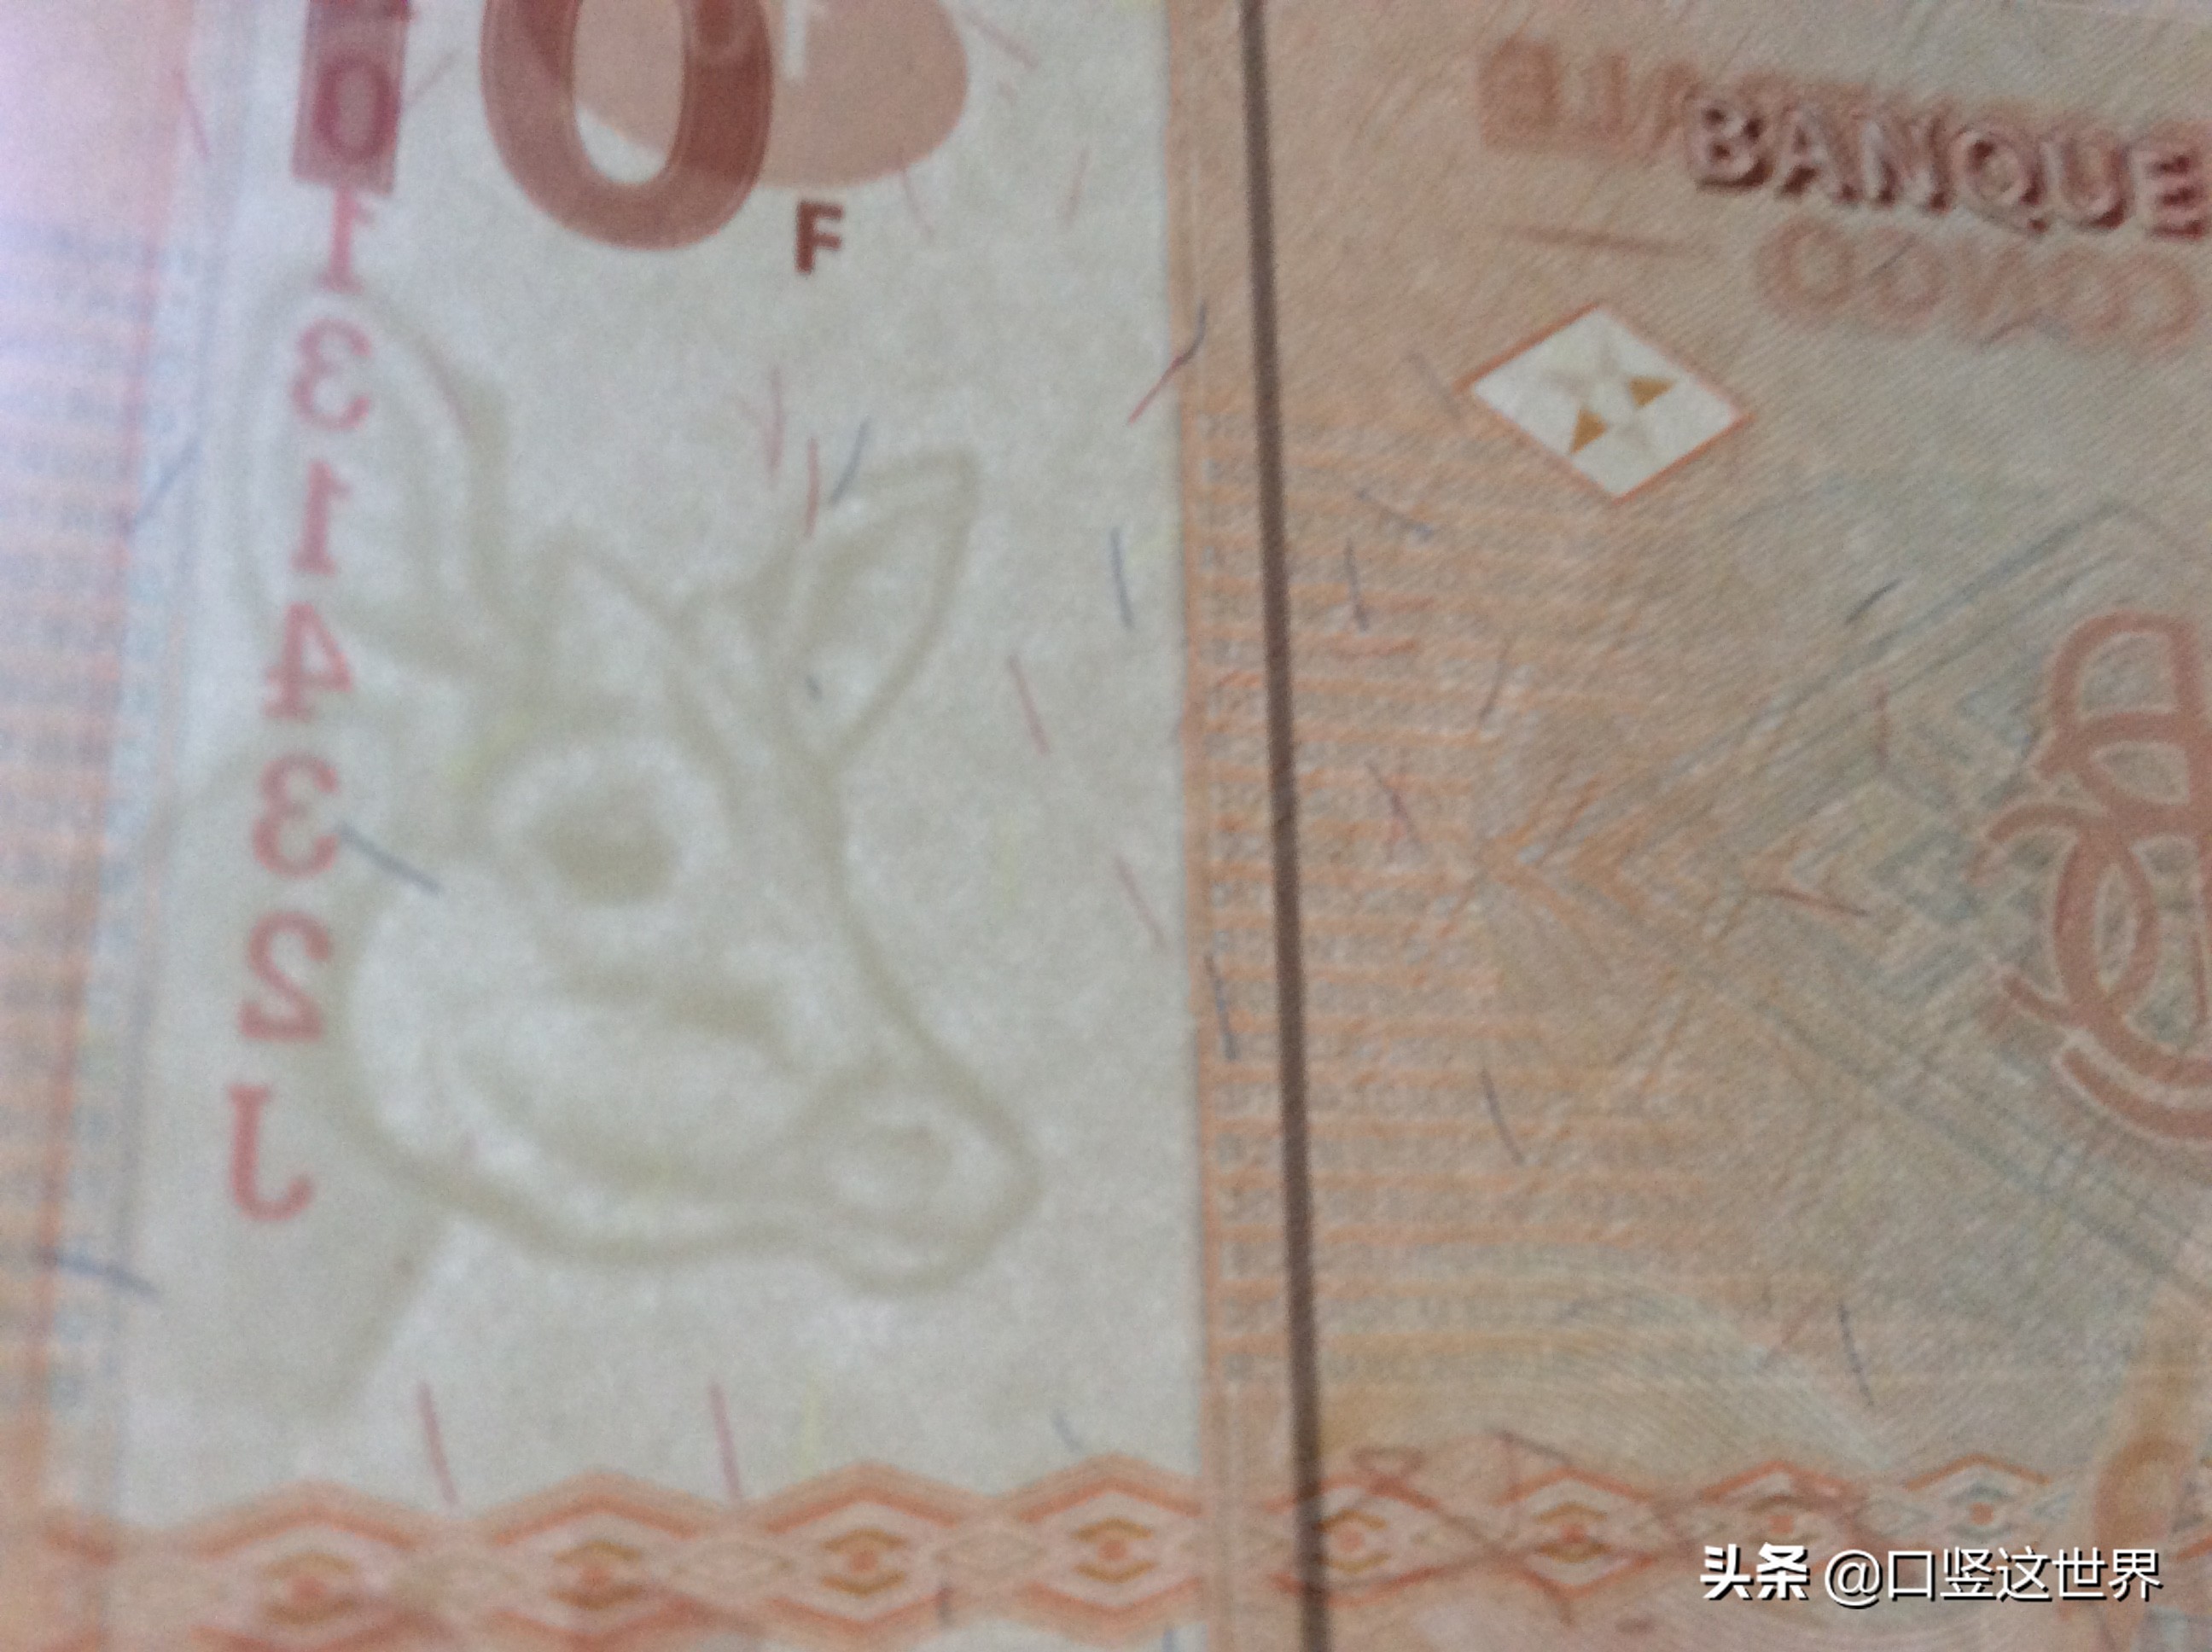 法郎的符号(刚果金的10法郎纸钞)